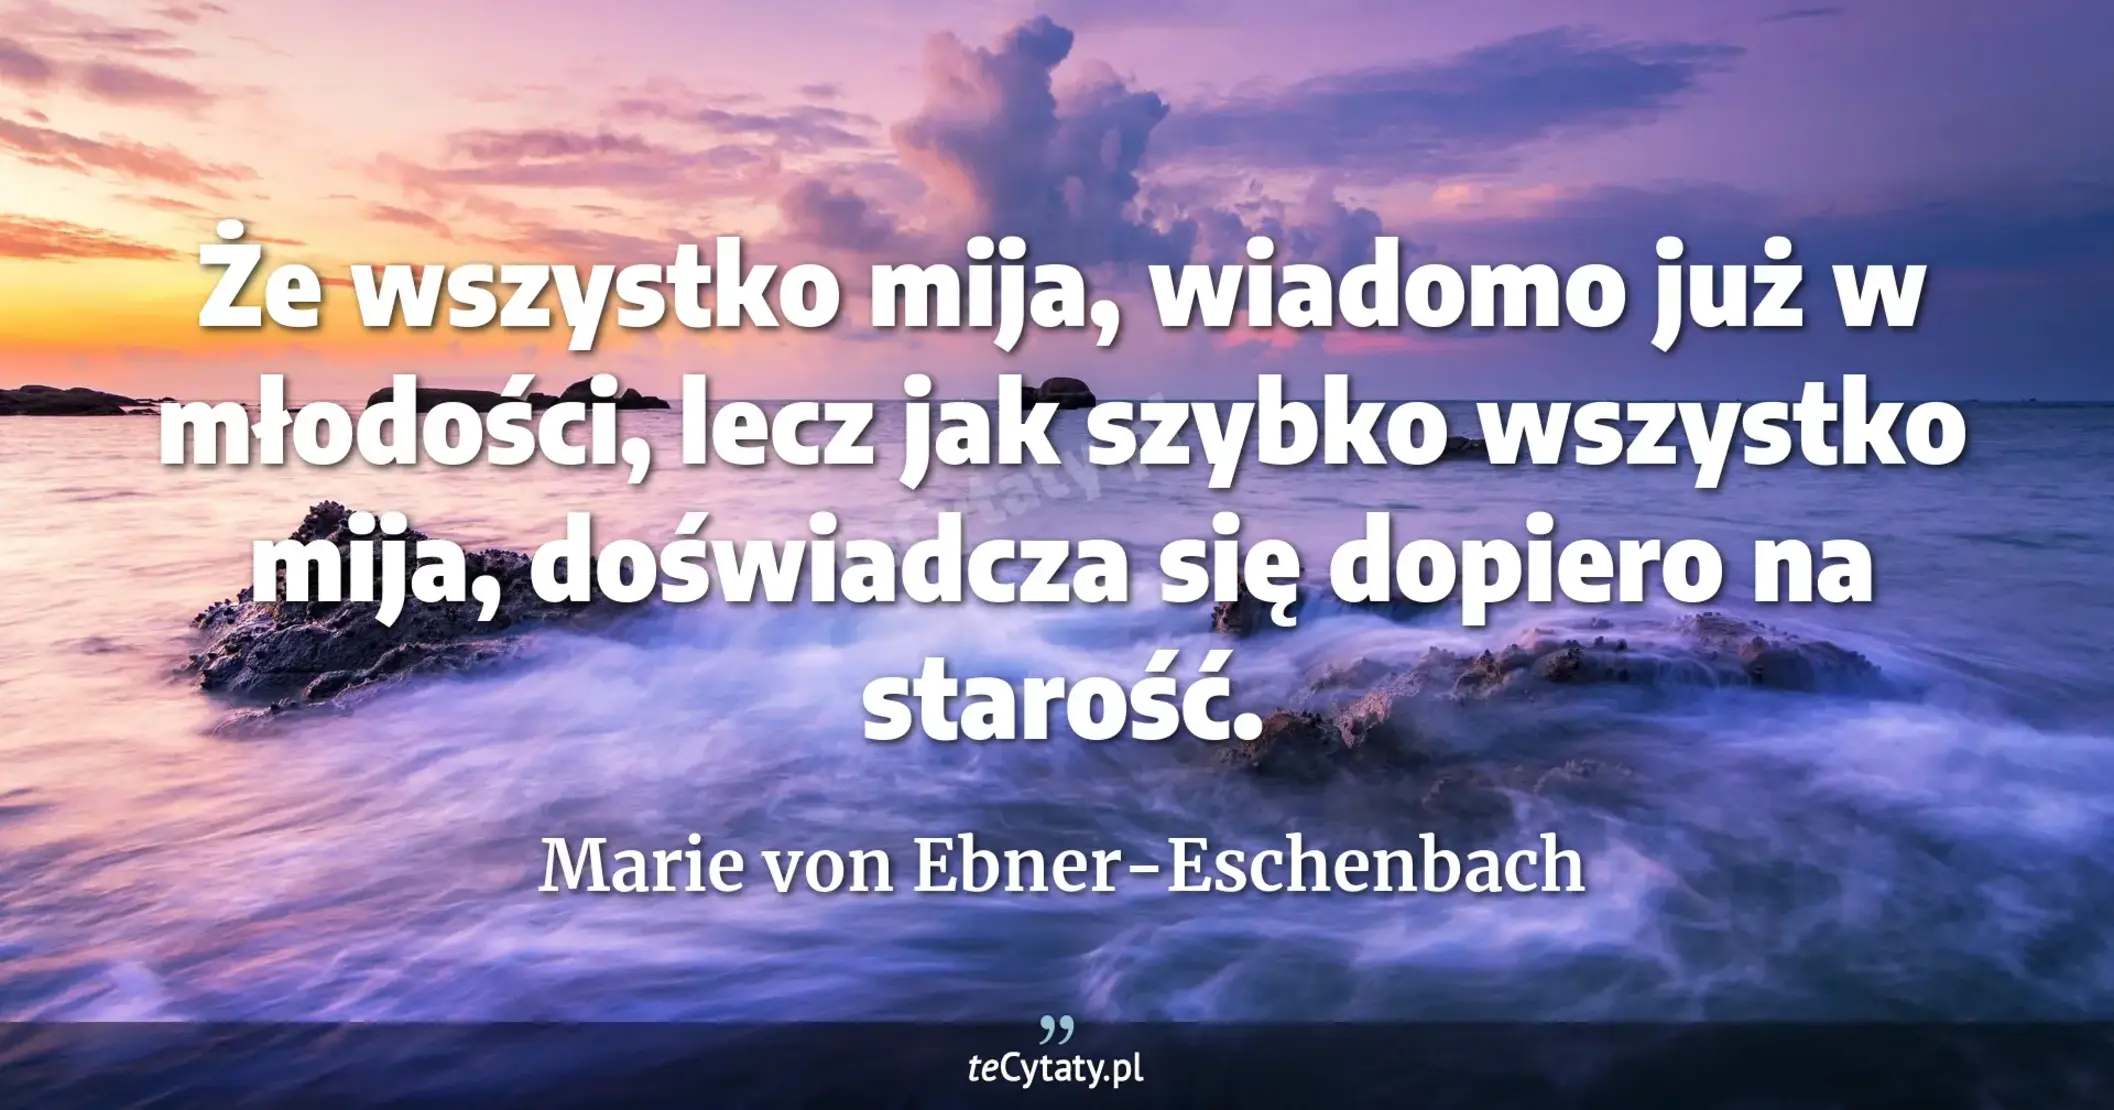 Że wszystko mija, wiadomo już w młodości, lecz jak szybko wszystko mija, doświadcza się dopiero na starość. - Marie von Ebner-Eschenbach